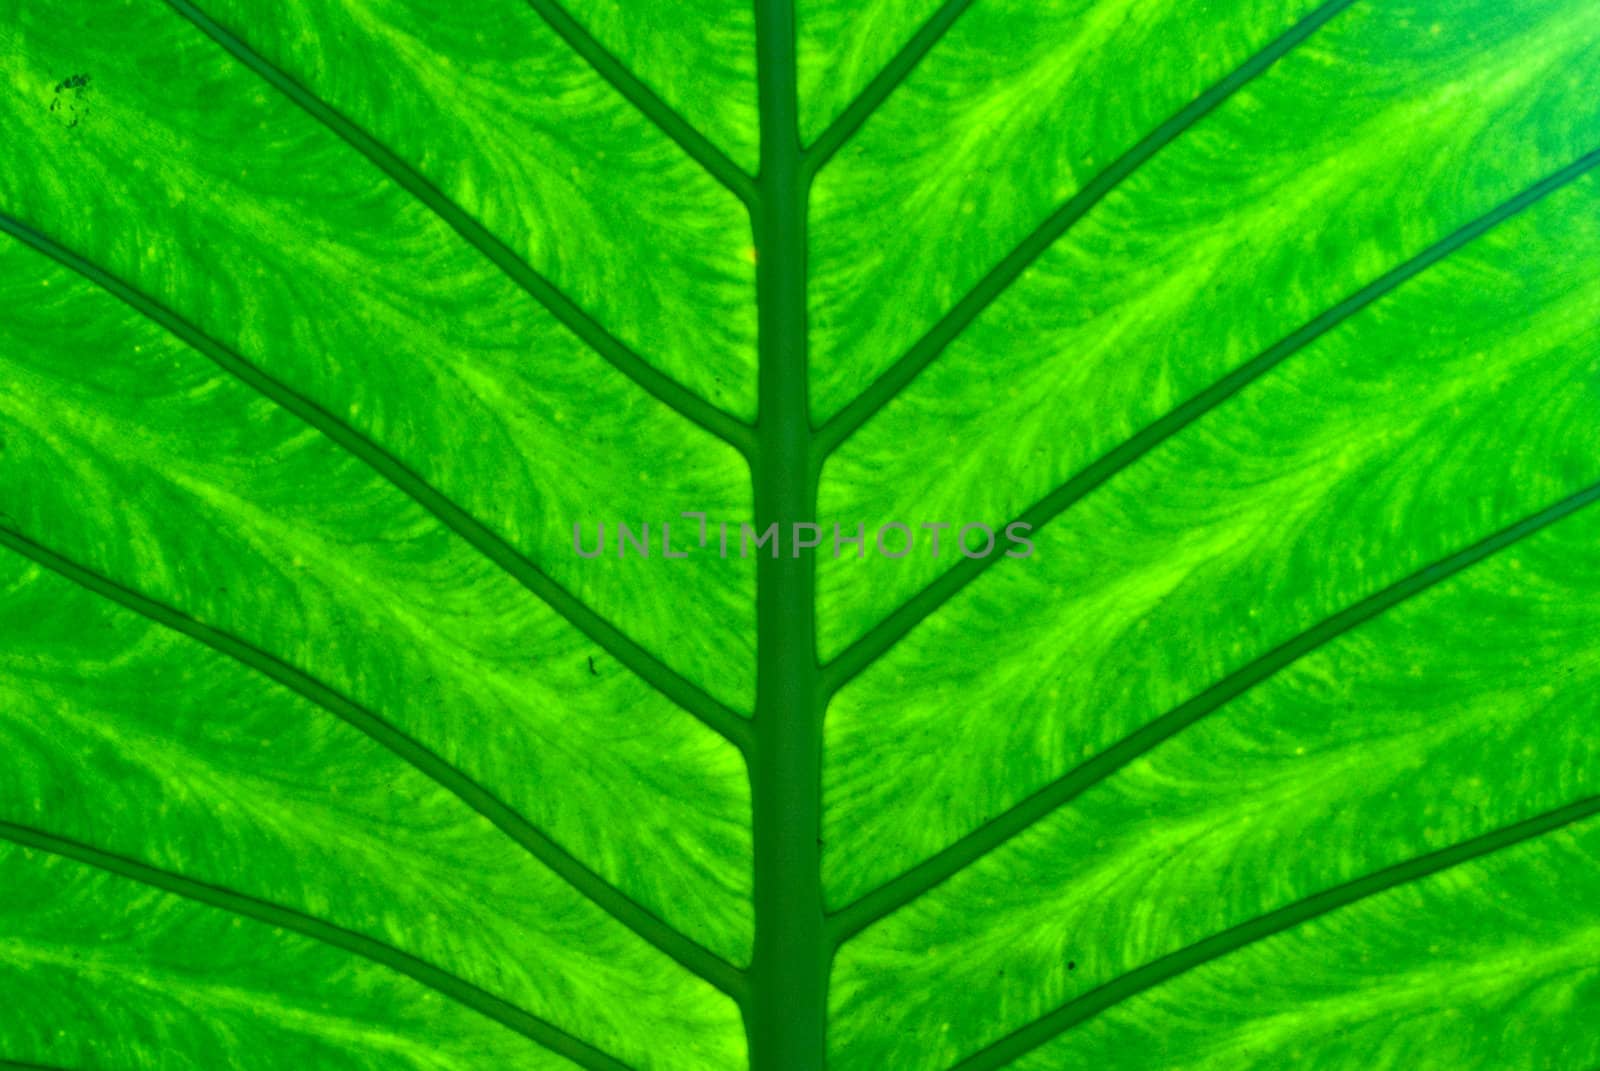 Bright Green Leaf by emattil